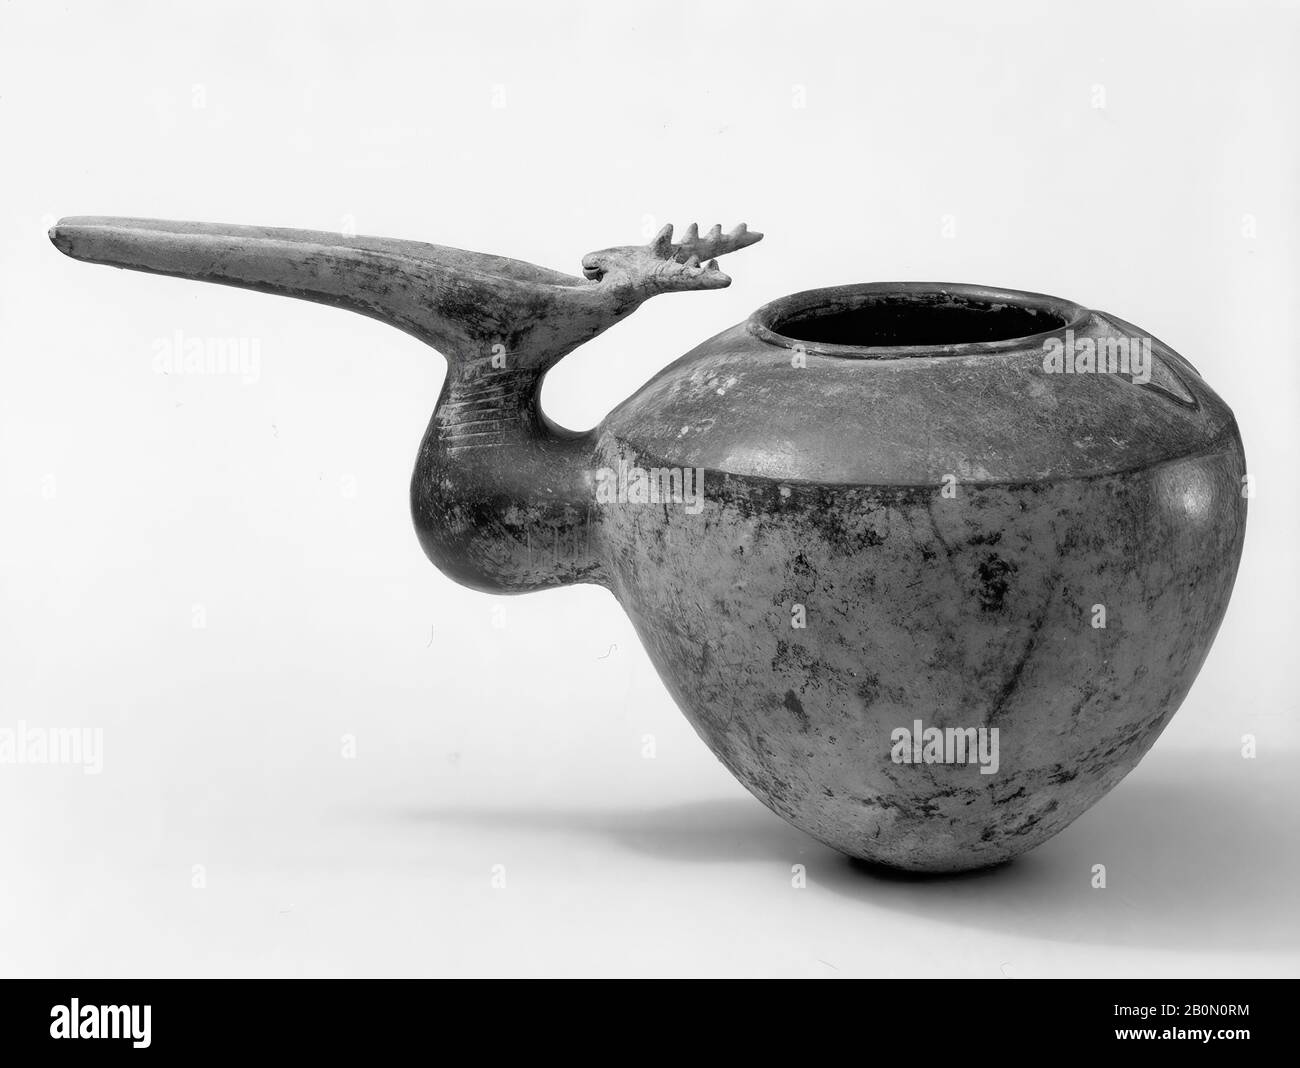 Vessel, Iran, Iron Age, Date ca. 1000 B.C., Iran, Iran, Ceramic, 7.87 x 15.55 in. (19.99 x 39.5 cm), Ceramics-Vessels Stock Photo